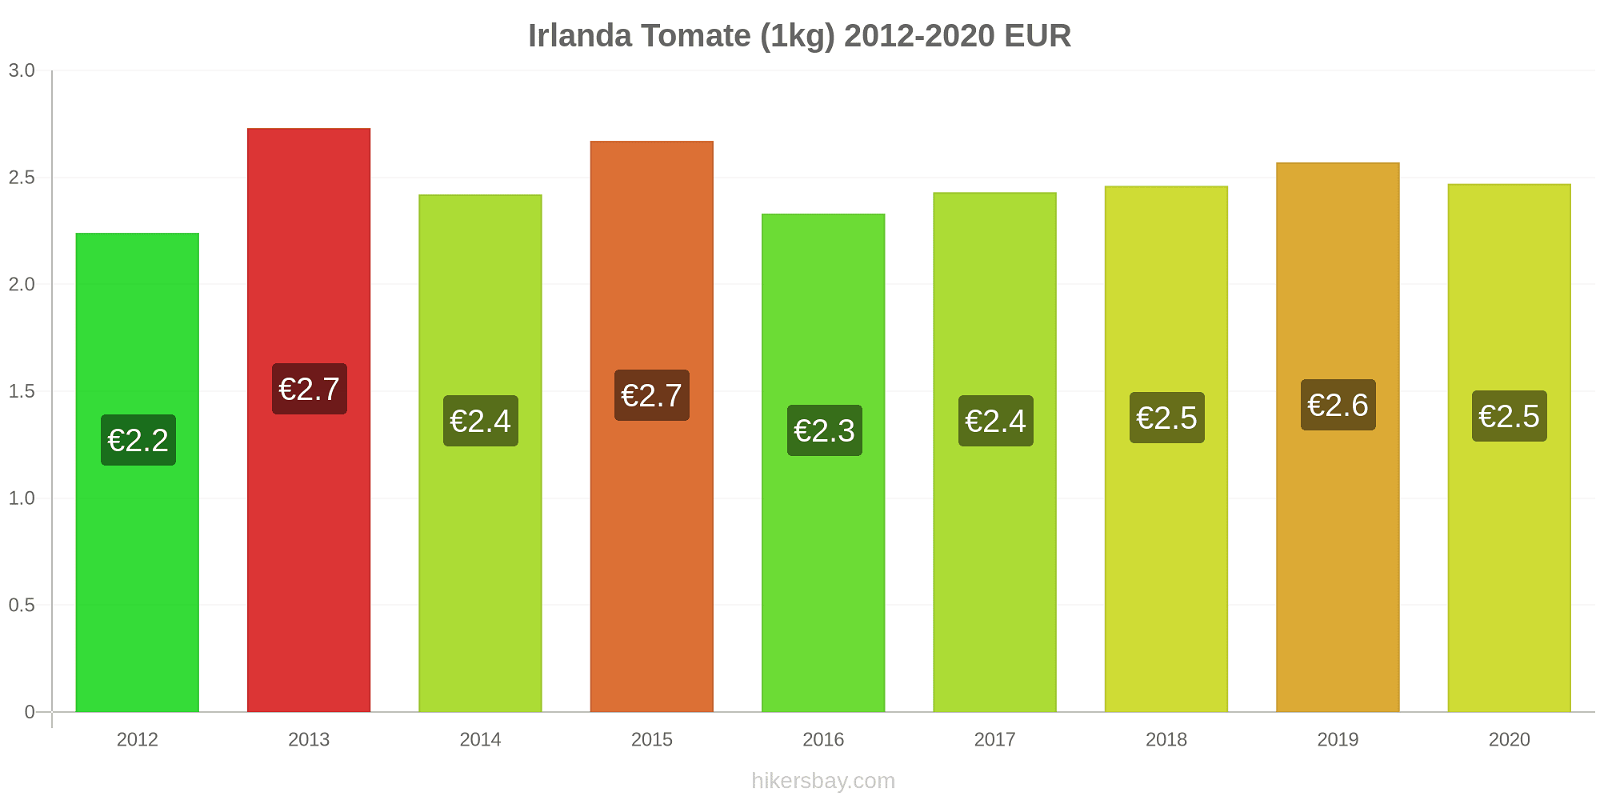 Irlanda cambios de precios Tomate (1kg) hikersbay.com